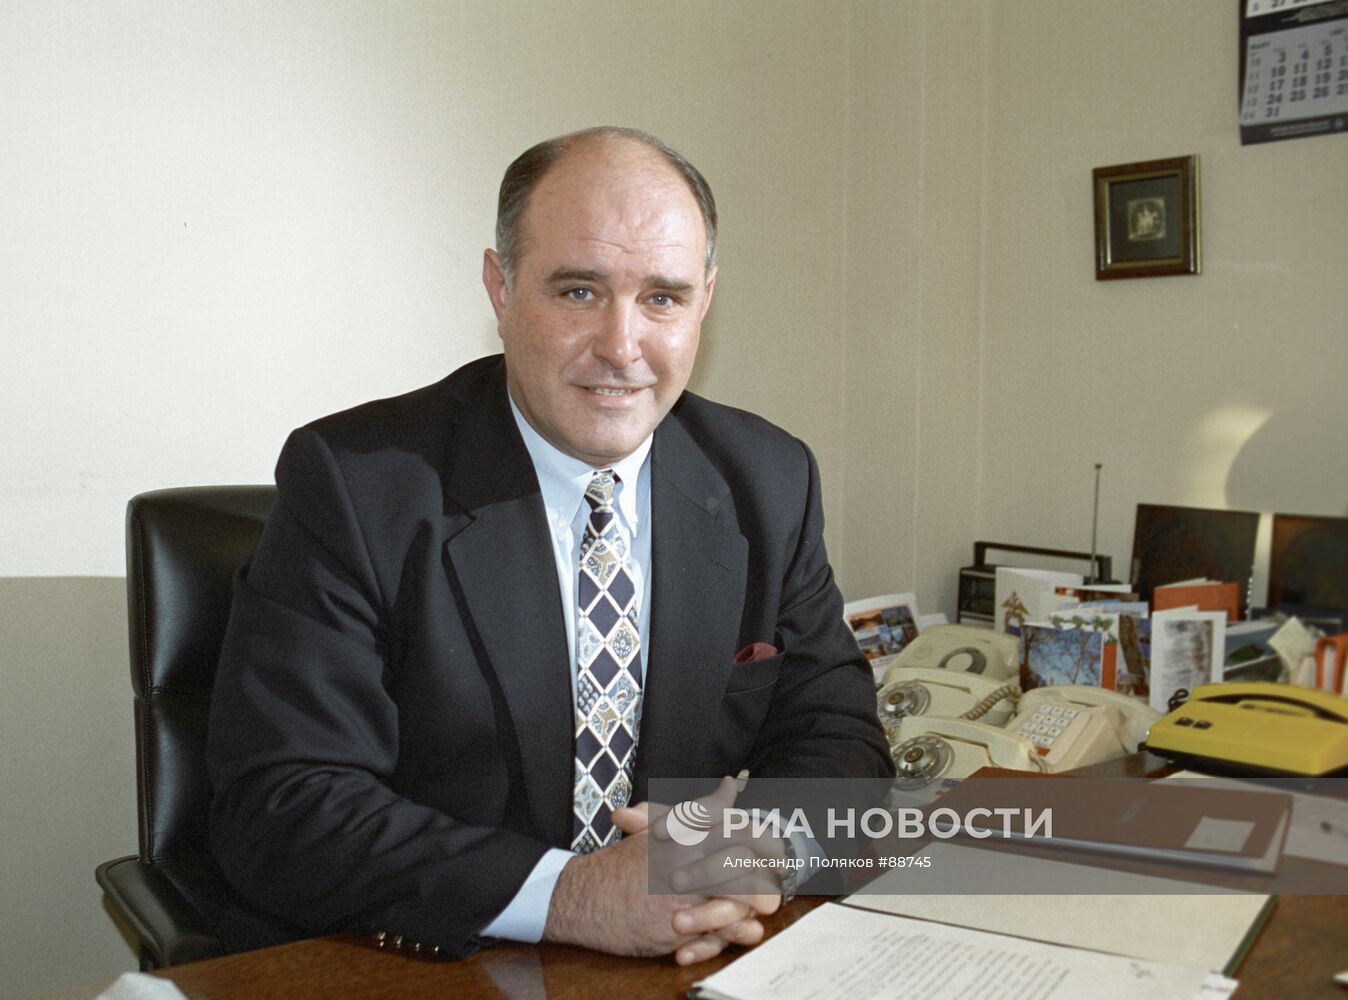 Григорий Карасин